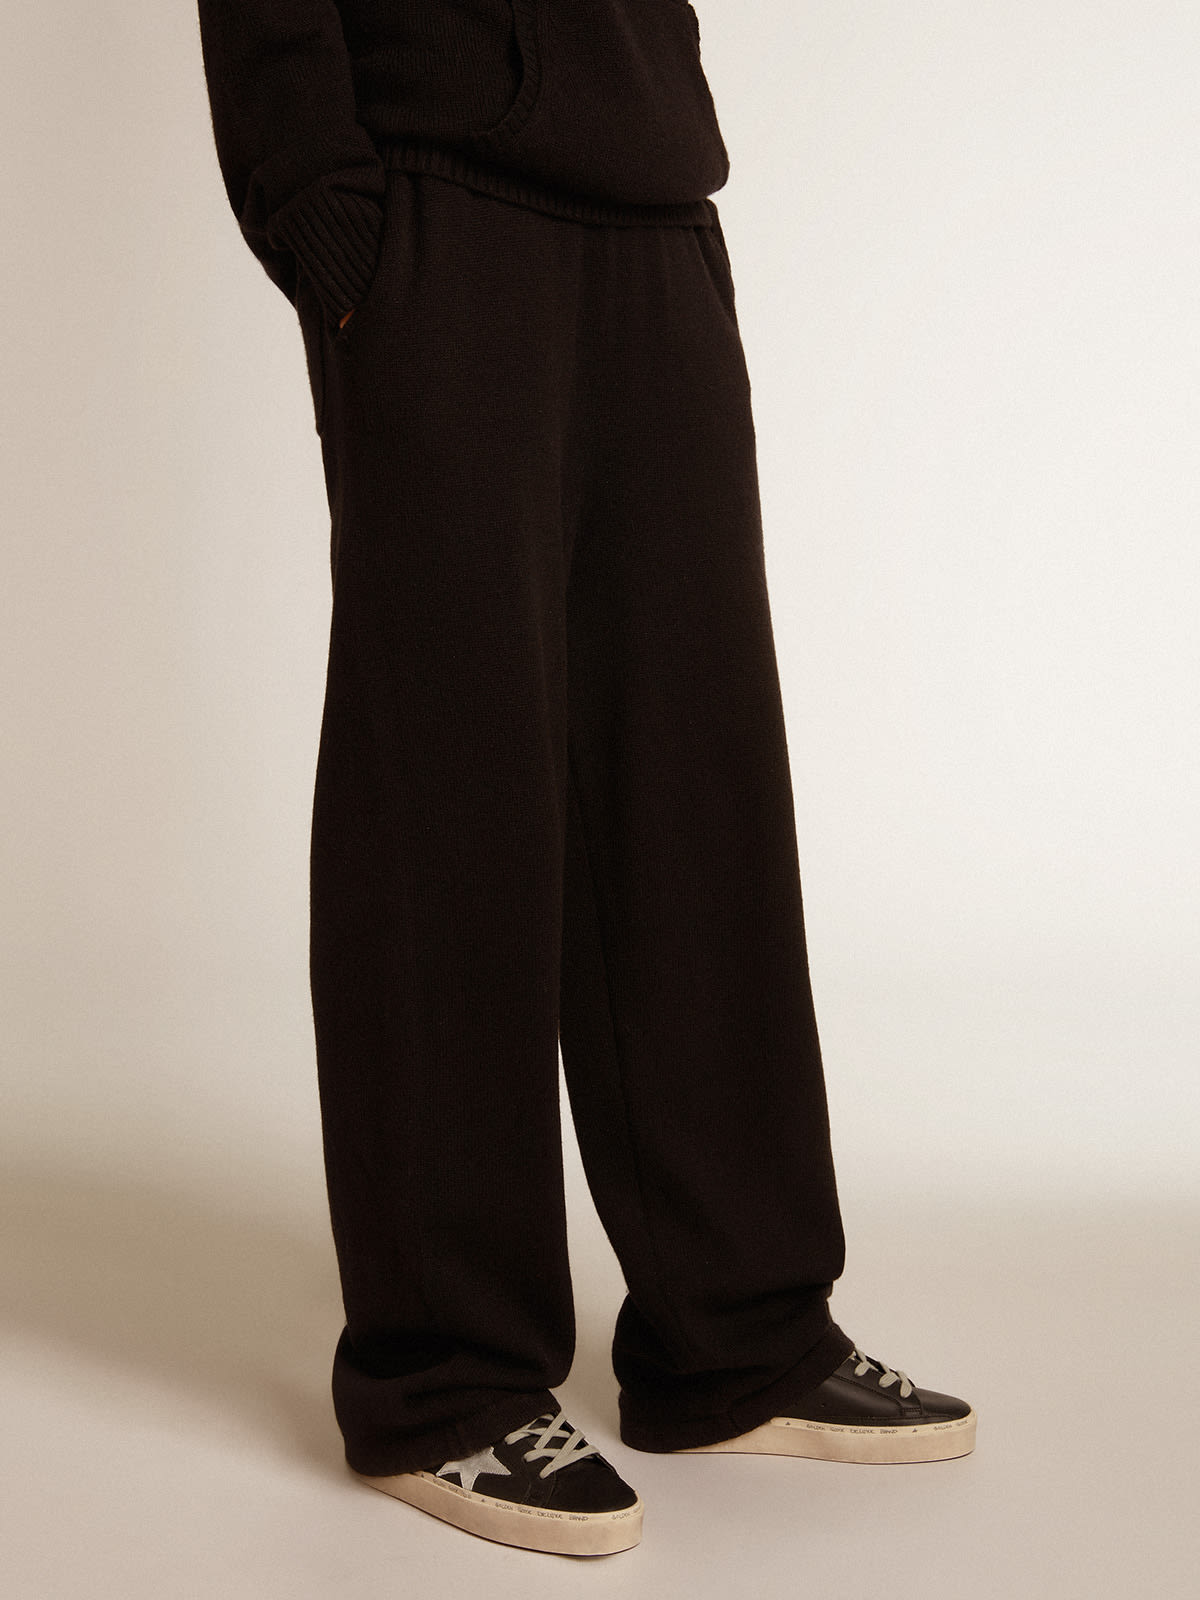 Golden Goose - Pantalone jogging donna misto cashmere di colore nero in 